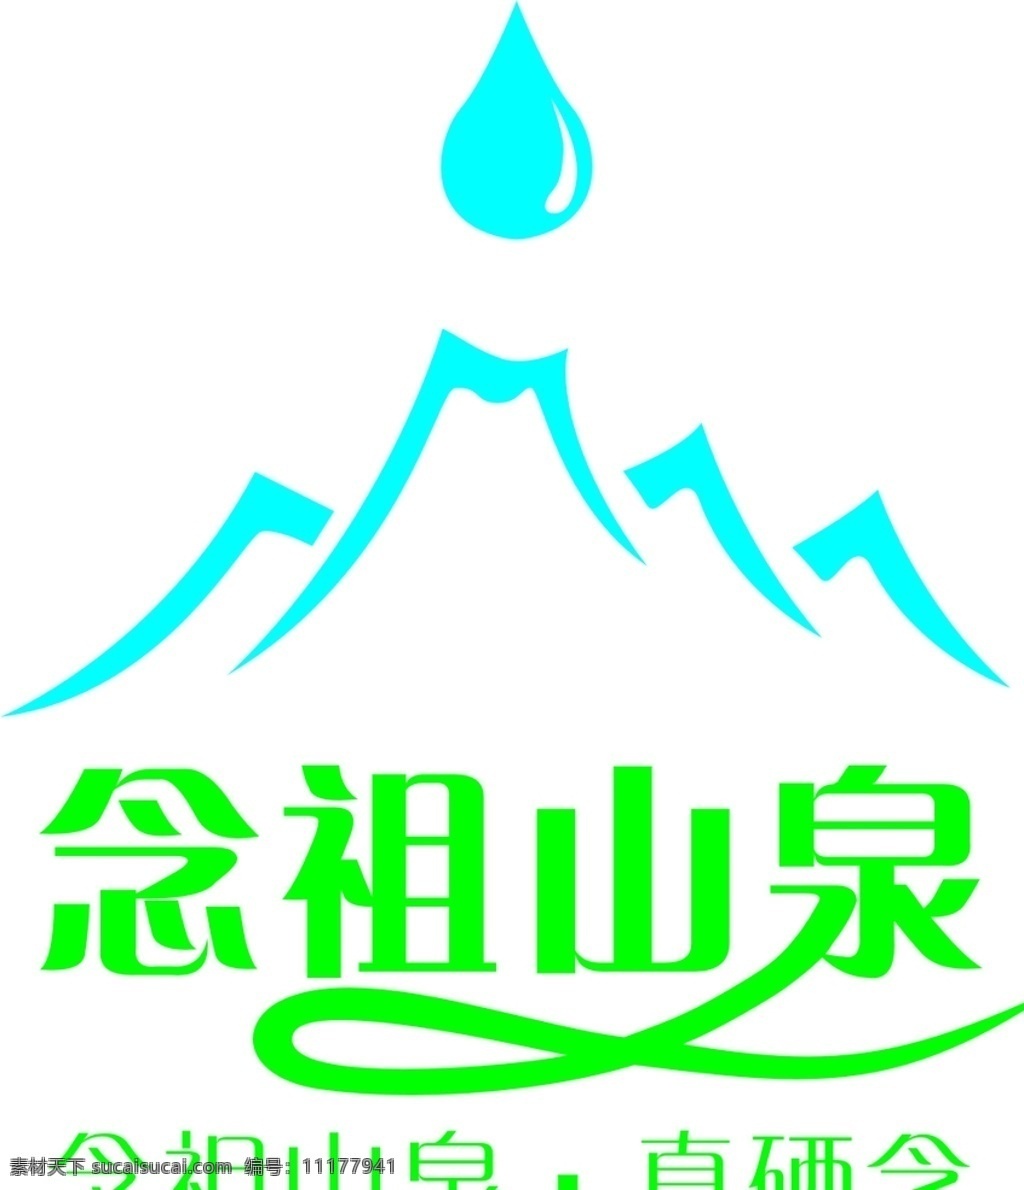 念祖山泉标志 念祖 山泉 标志 纯净水 矿泉水 标志图标 企业 logo